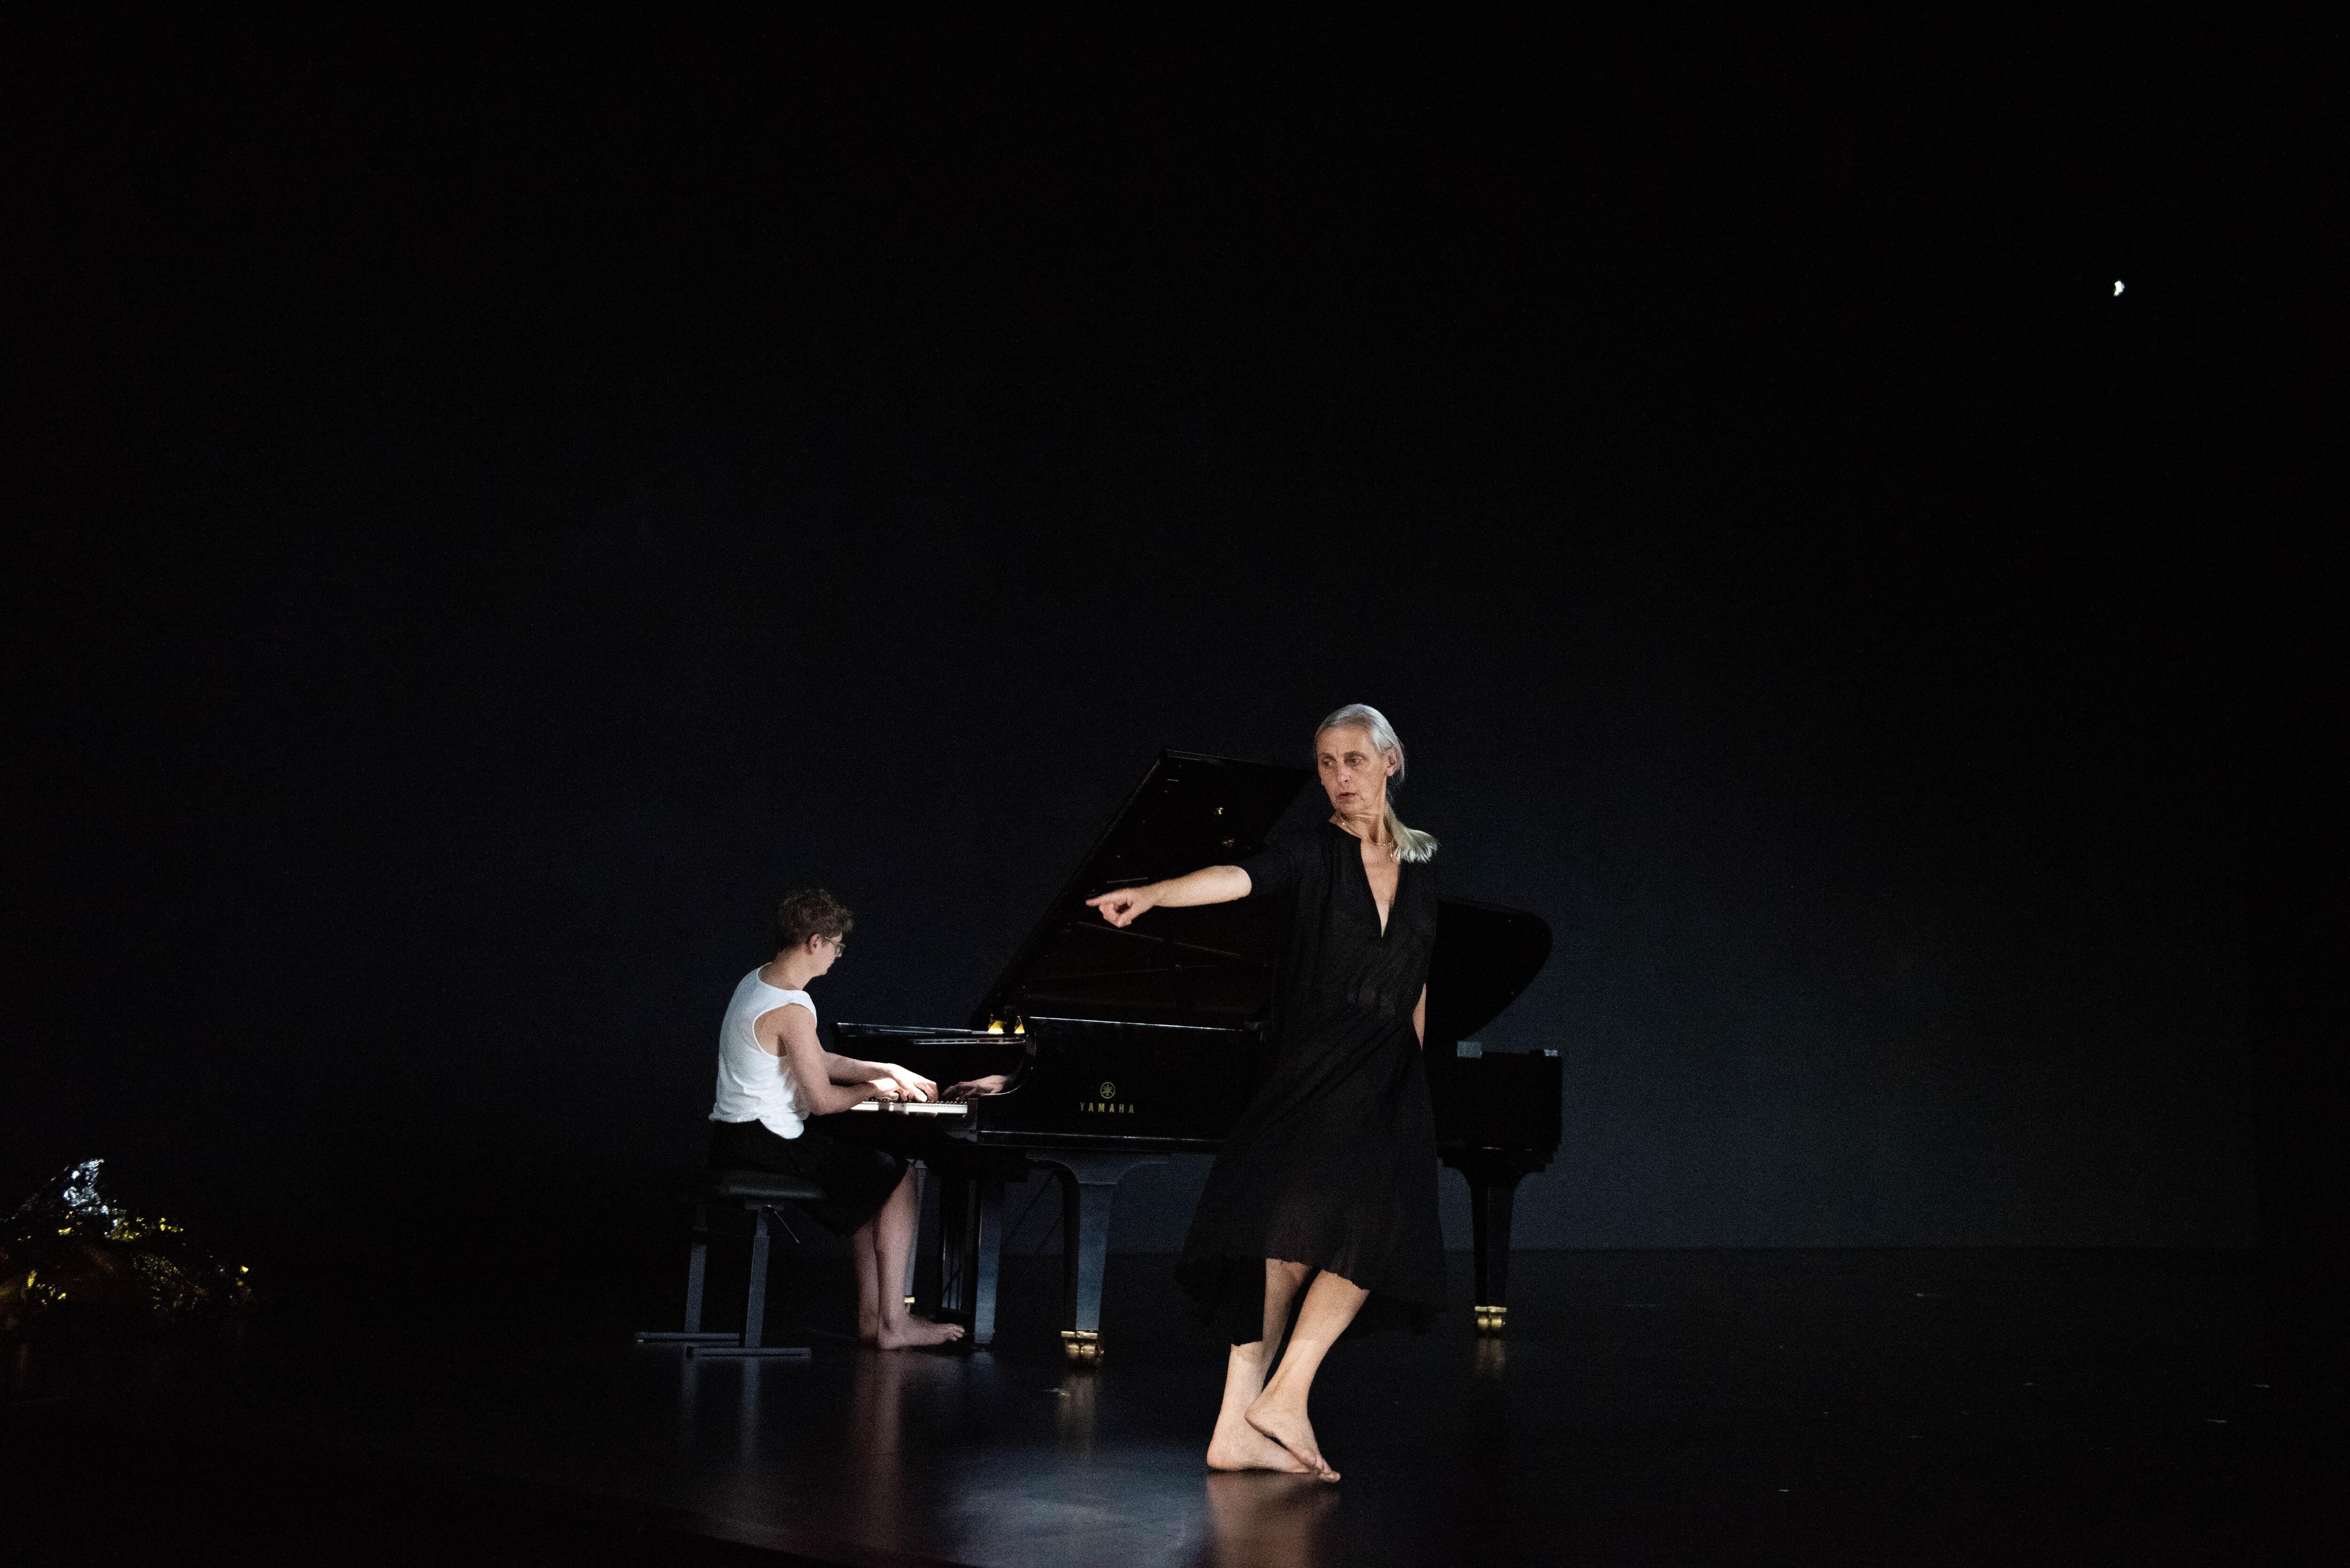 「在黑色的舞台上，身穿深V領黑色連身裙的舞者指向左方，她的赤腳引領著她朝相反的方向前進，而身後則是一名正在彈琴的青年。」